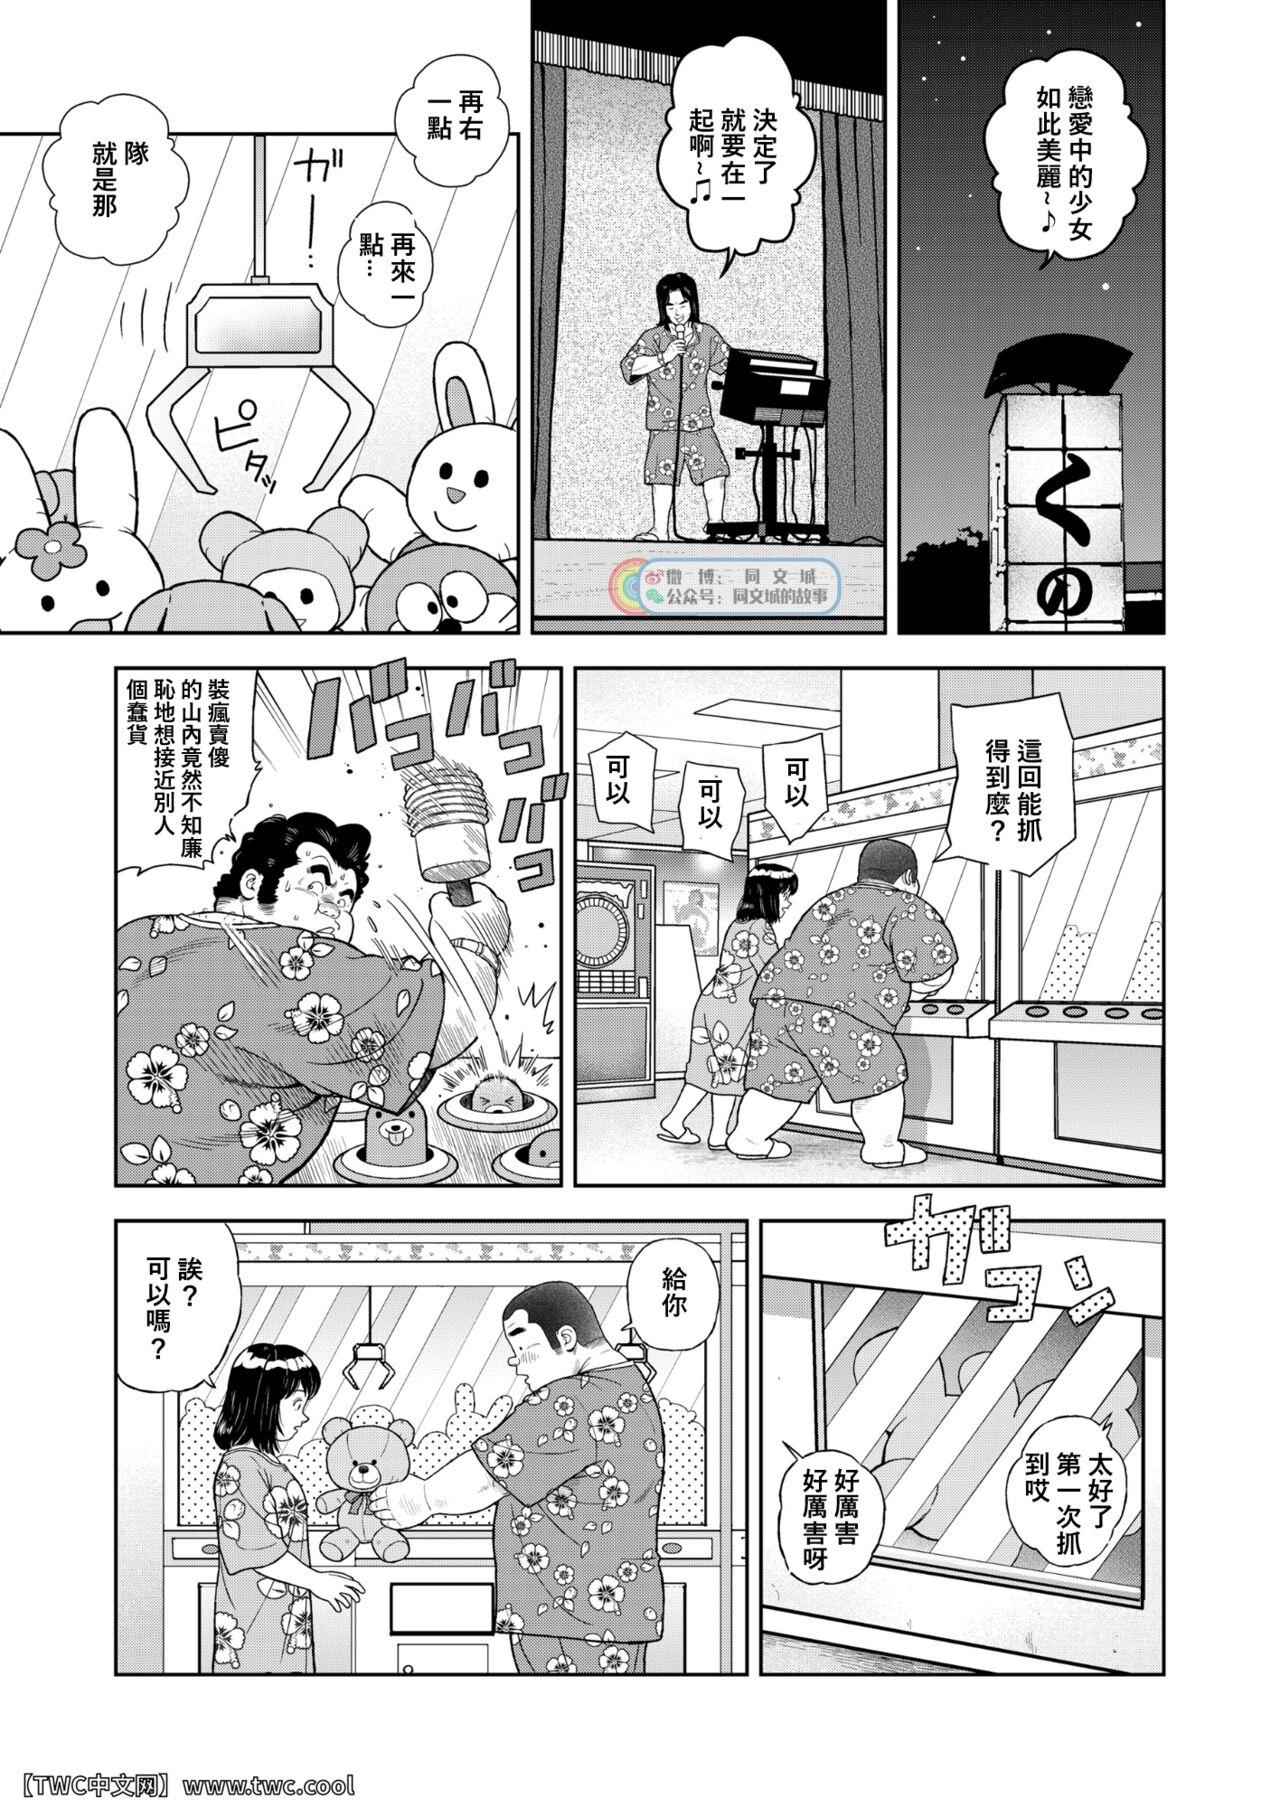 Sixtynine Kunoyu Nijyunanahatsume Anokane o Narasunohadonata - Original Peluda - Page 5